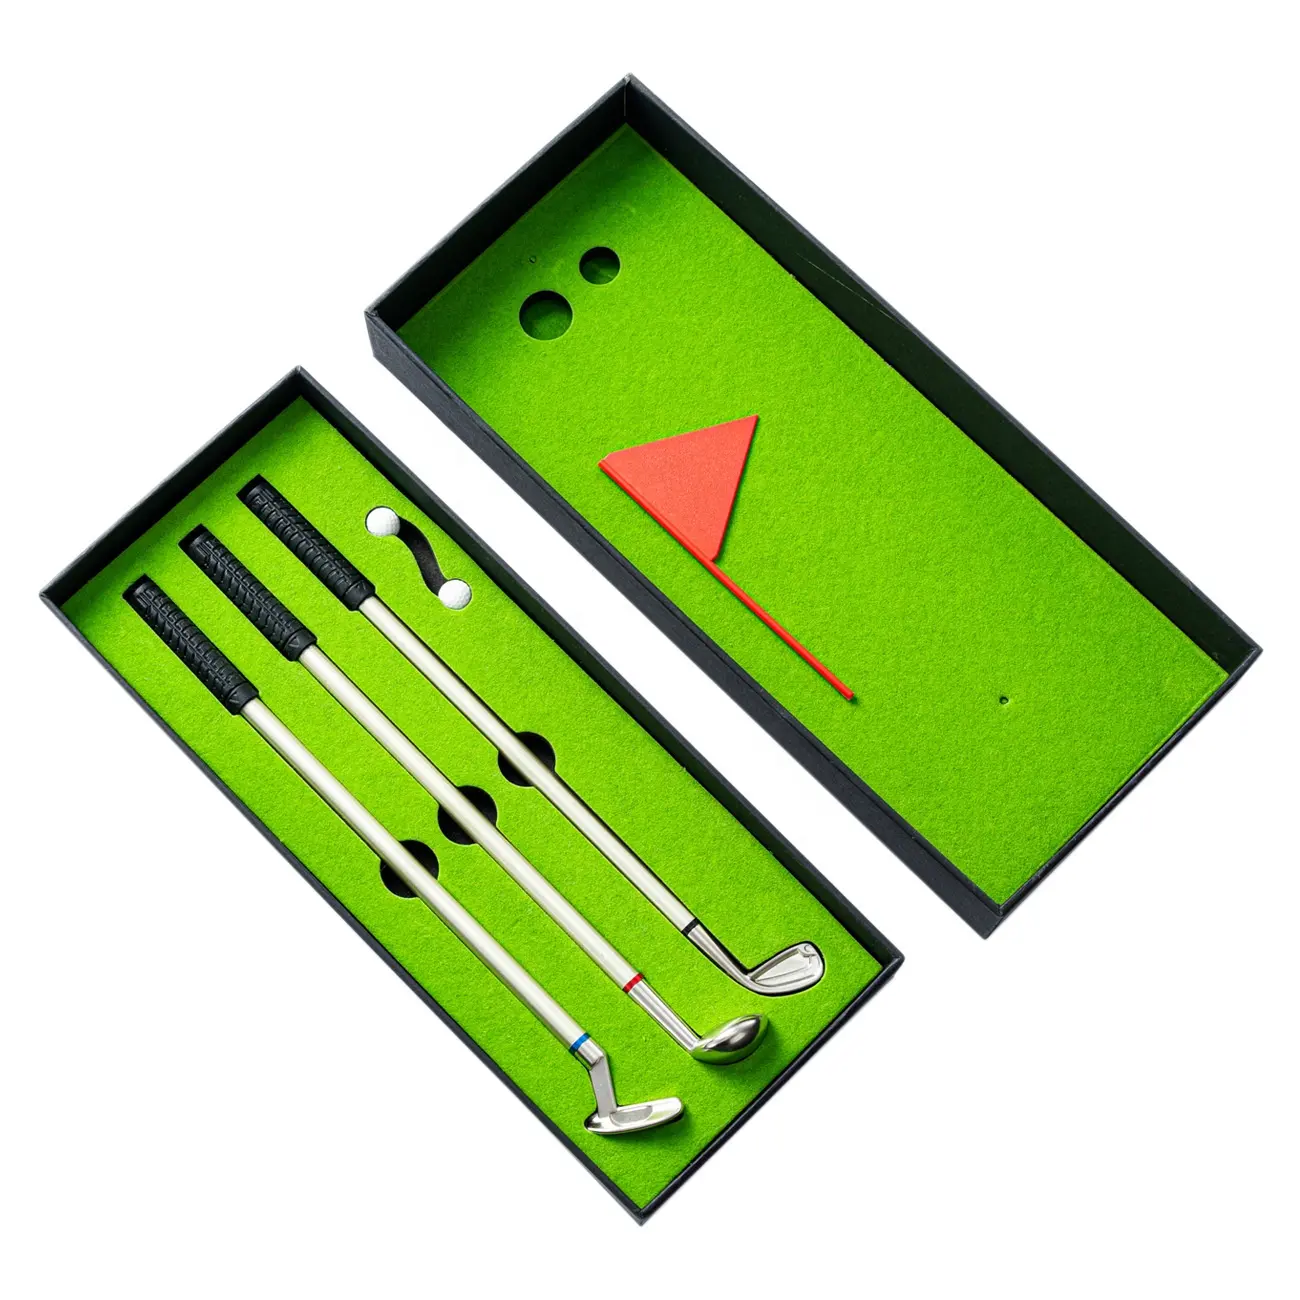 Metal tükenmez kalemler 3 In 1 Golf kalem Golf kulübü hediye promosyon yenilik hediye